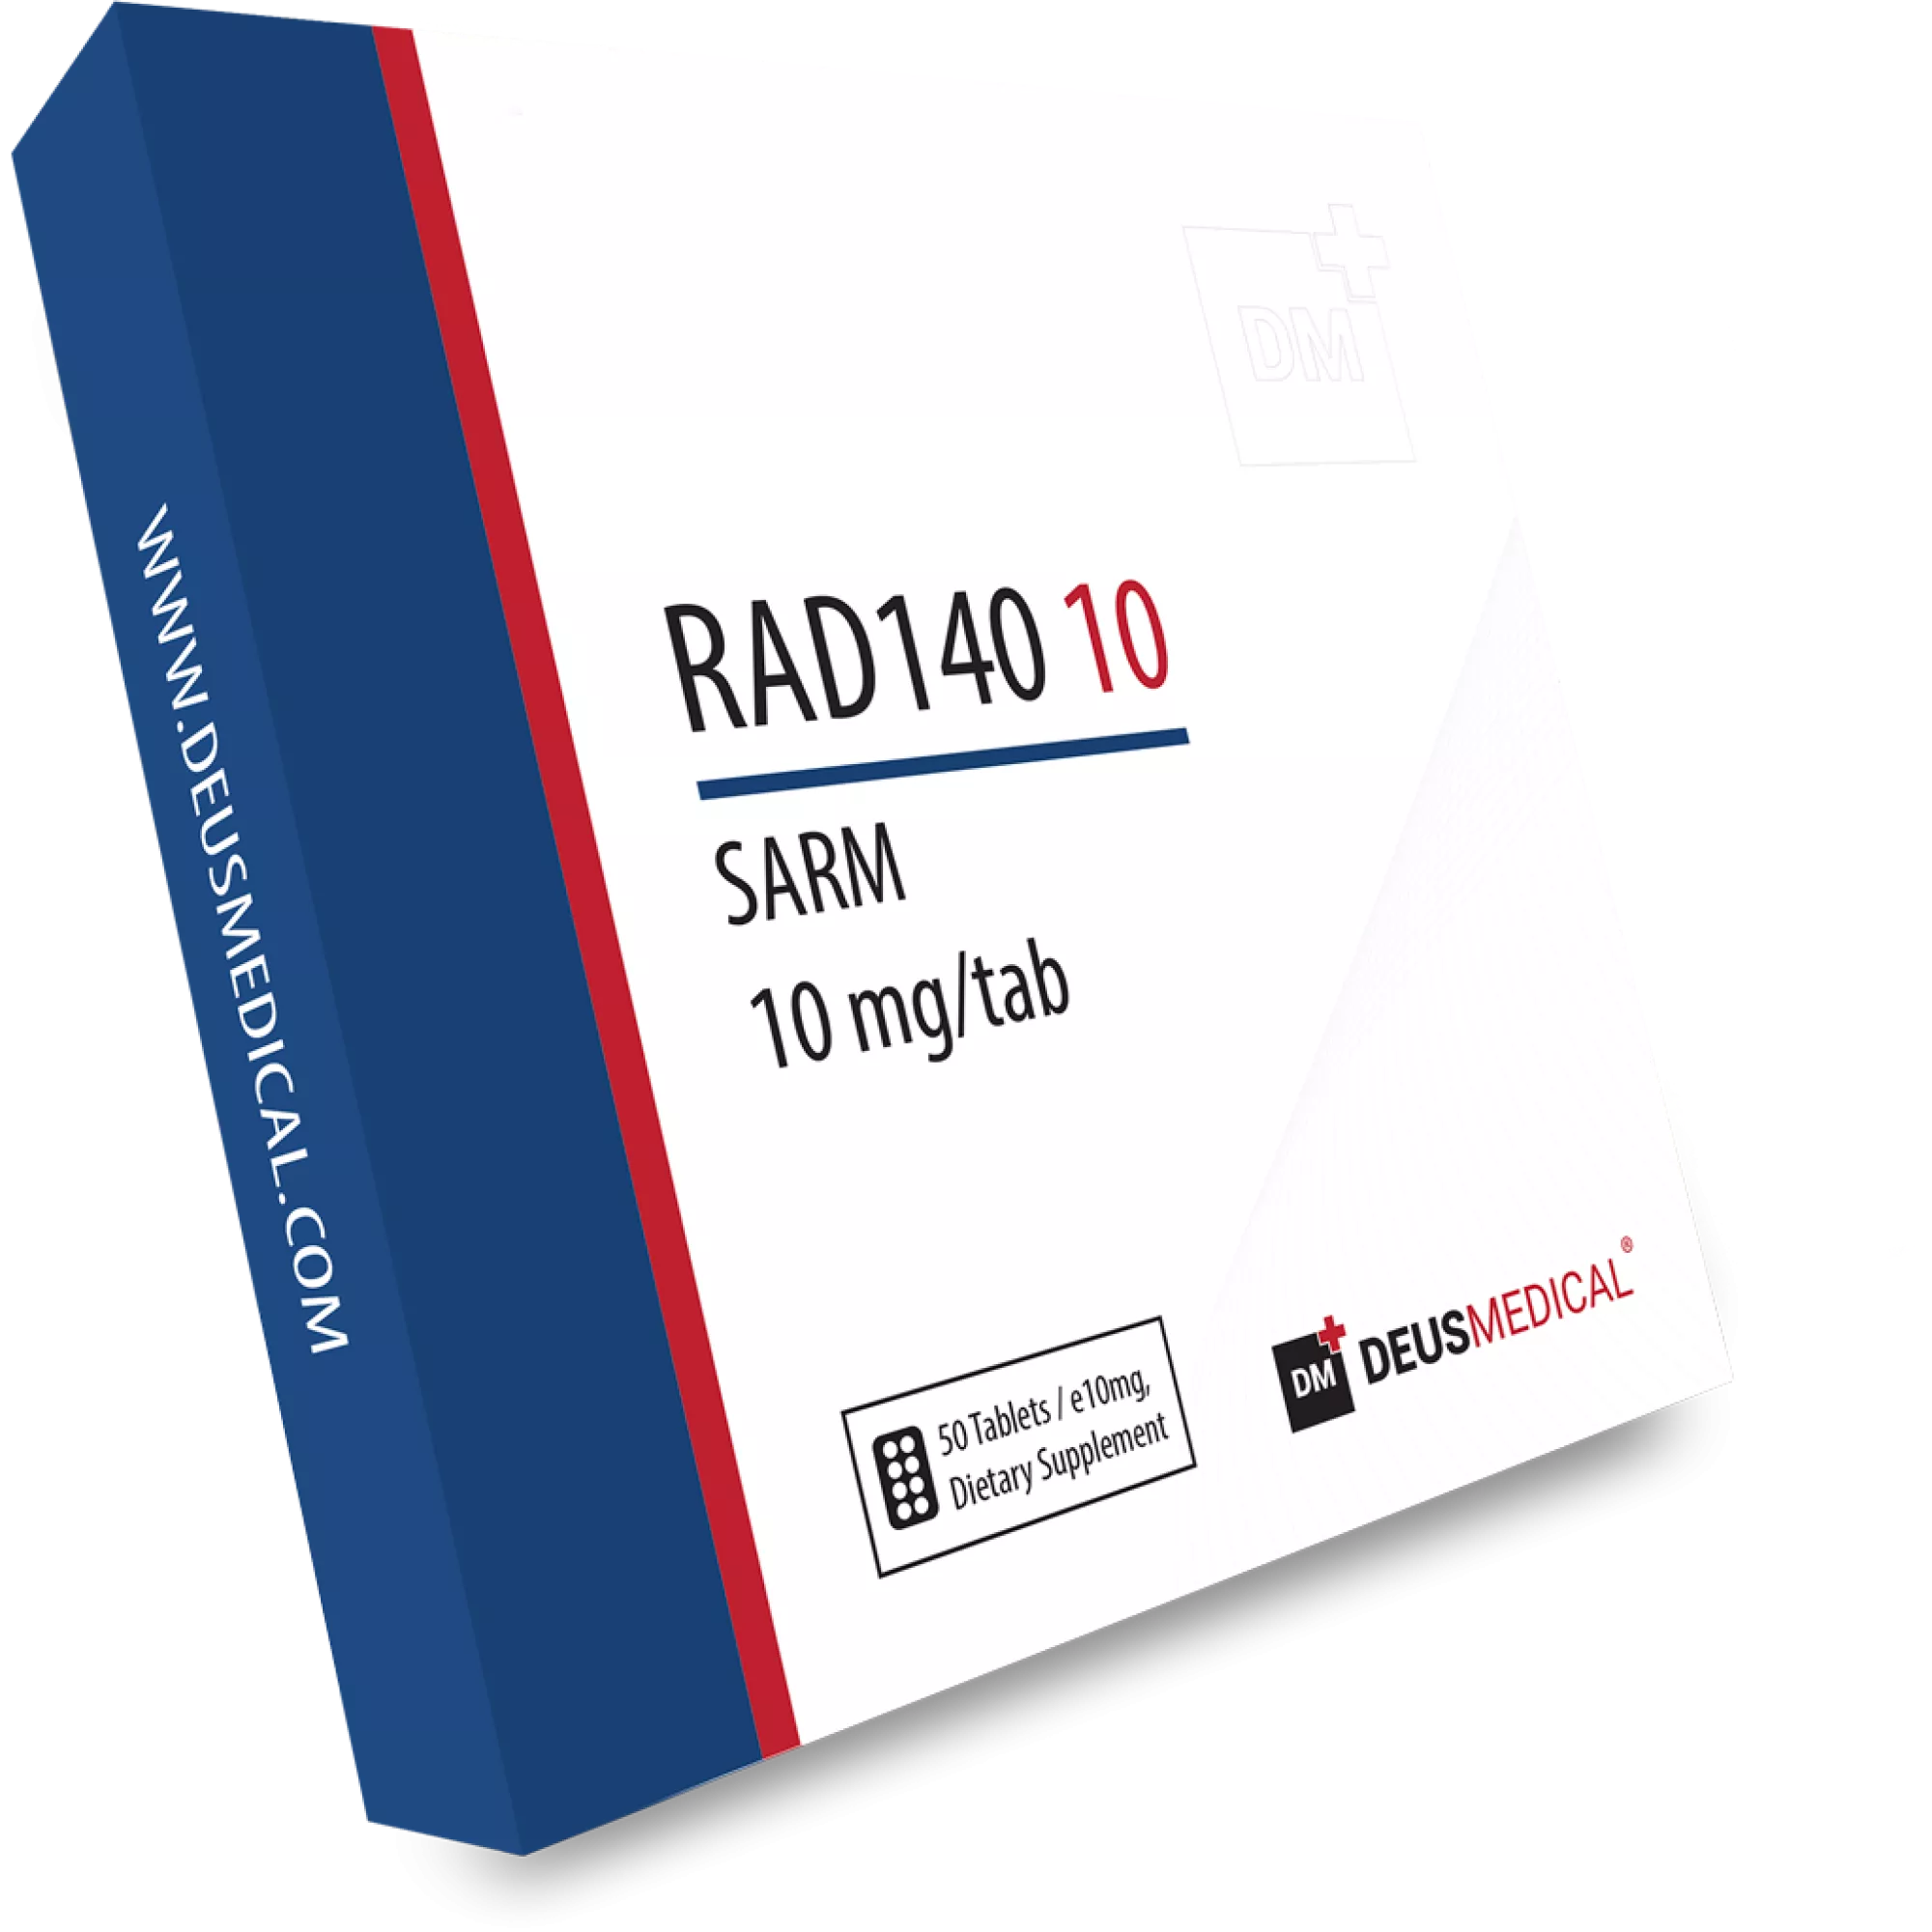 RAD140 10 (Testolone), Deus Medical, Buy Steroids Online - www.deuspower.shop